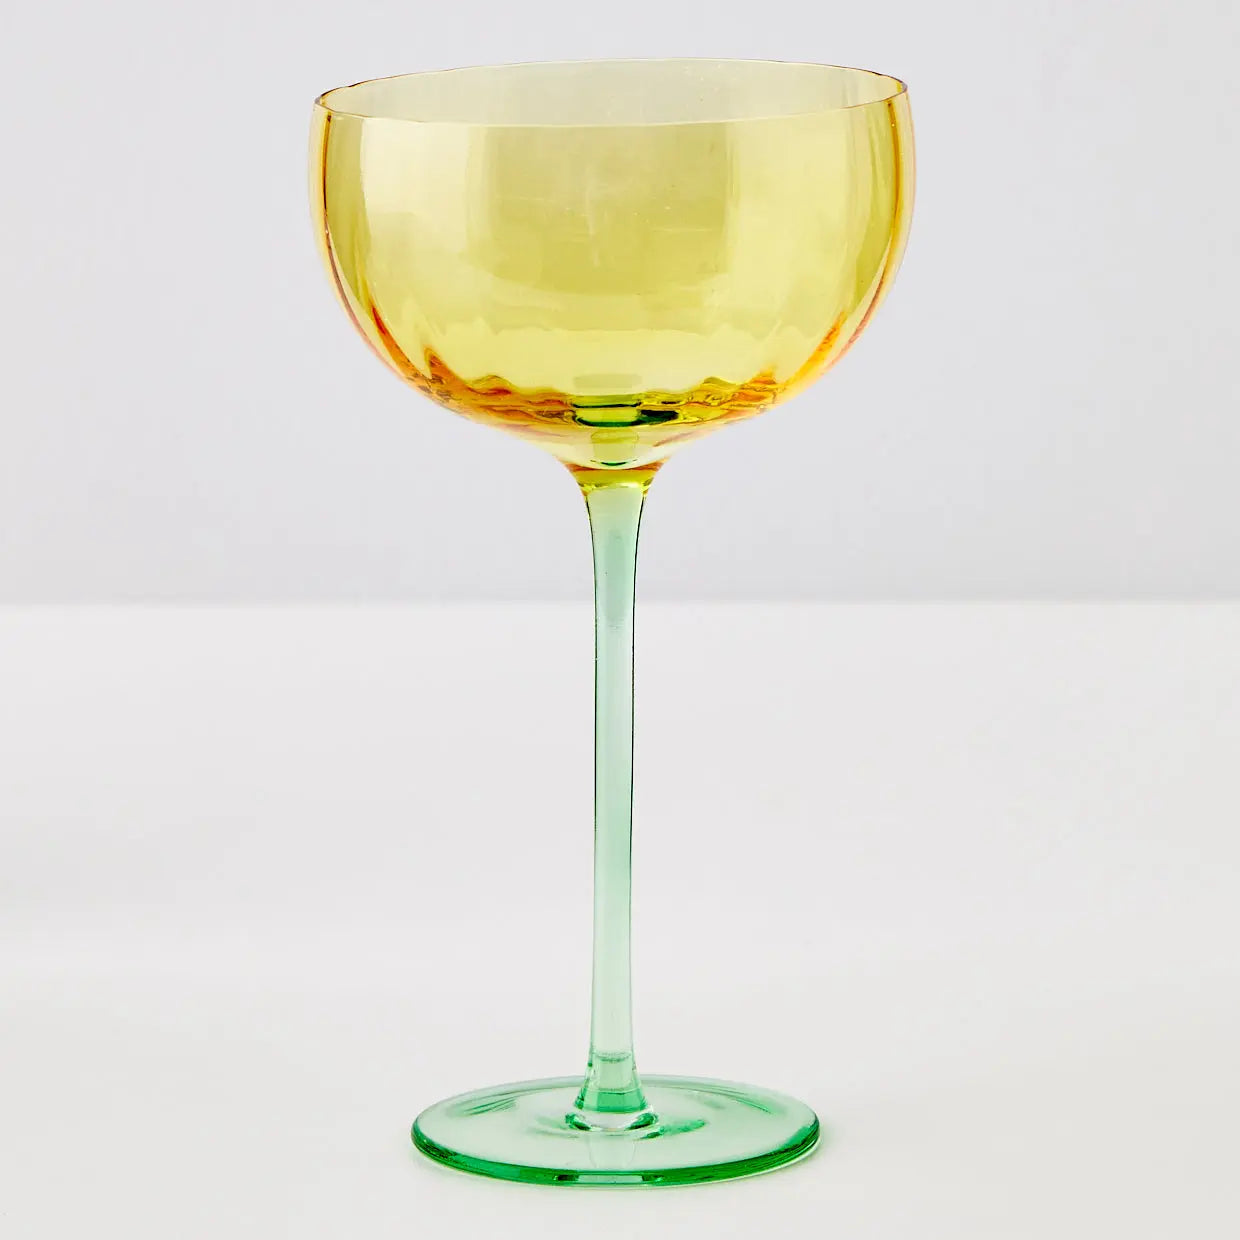 Wine Glass Yellow/Green - GigiandTom